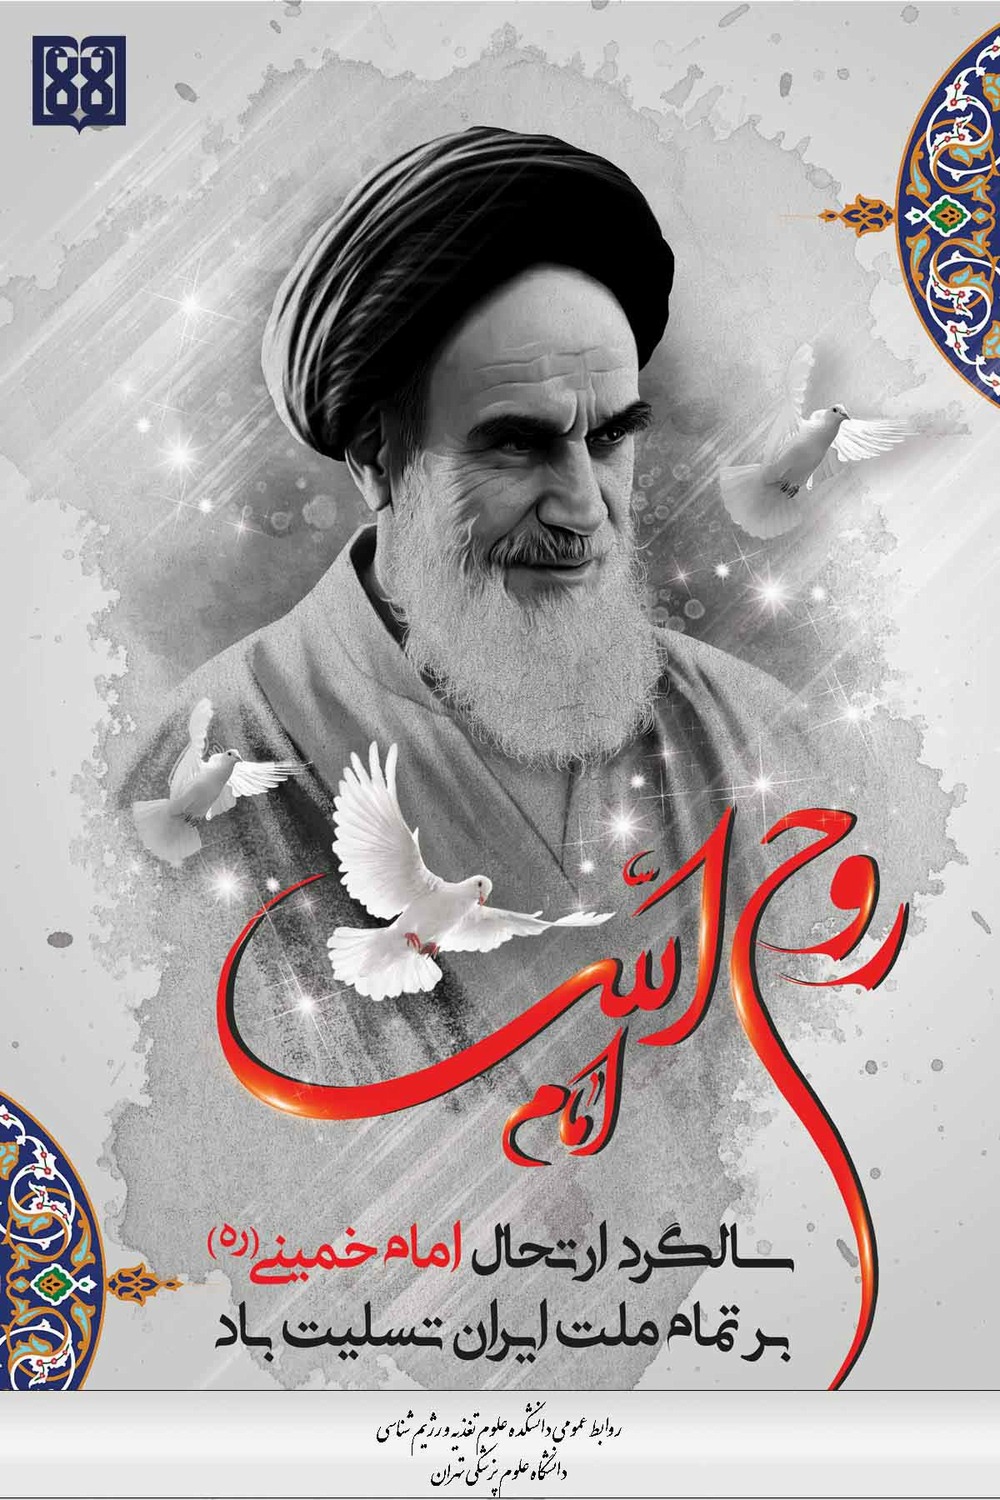 پیام تسلیت دکتر محمدحسن جوانبخت به مناسبت سالگرد ارتحال ملکوتی امام خمینی (ره) و قیام خونین ۱۵خرداد